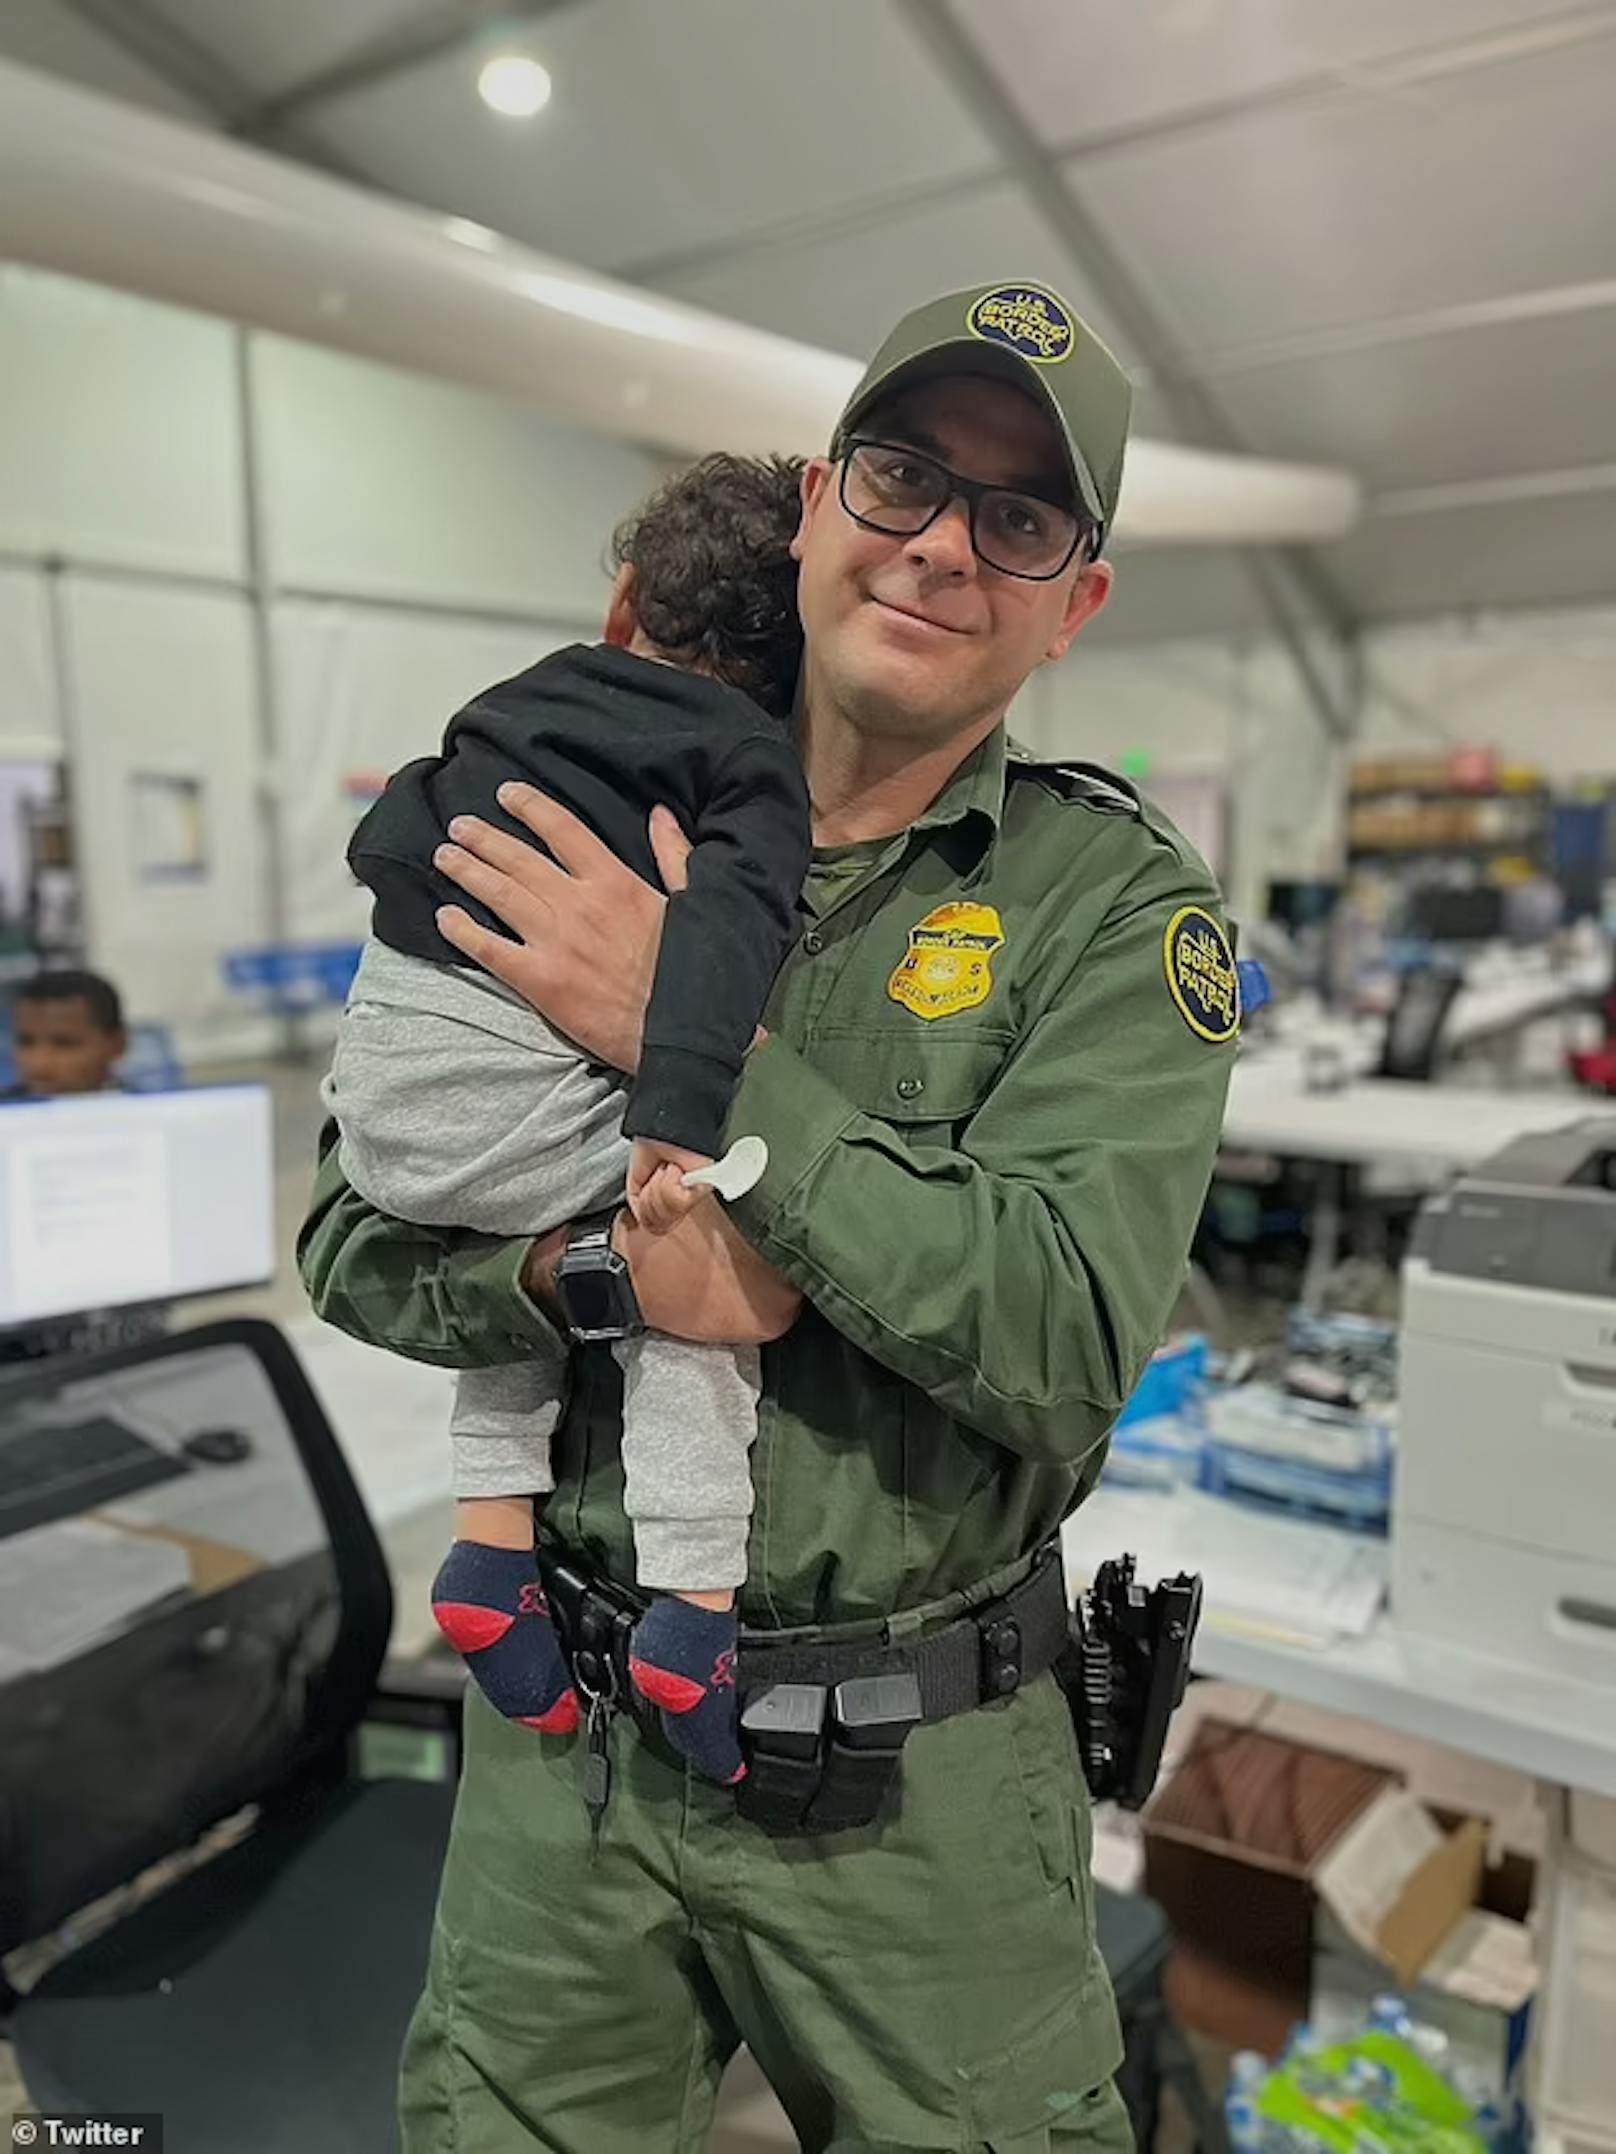 Einjähriges Kind an der Grenze USA/Mexiko ausgesetzt